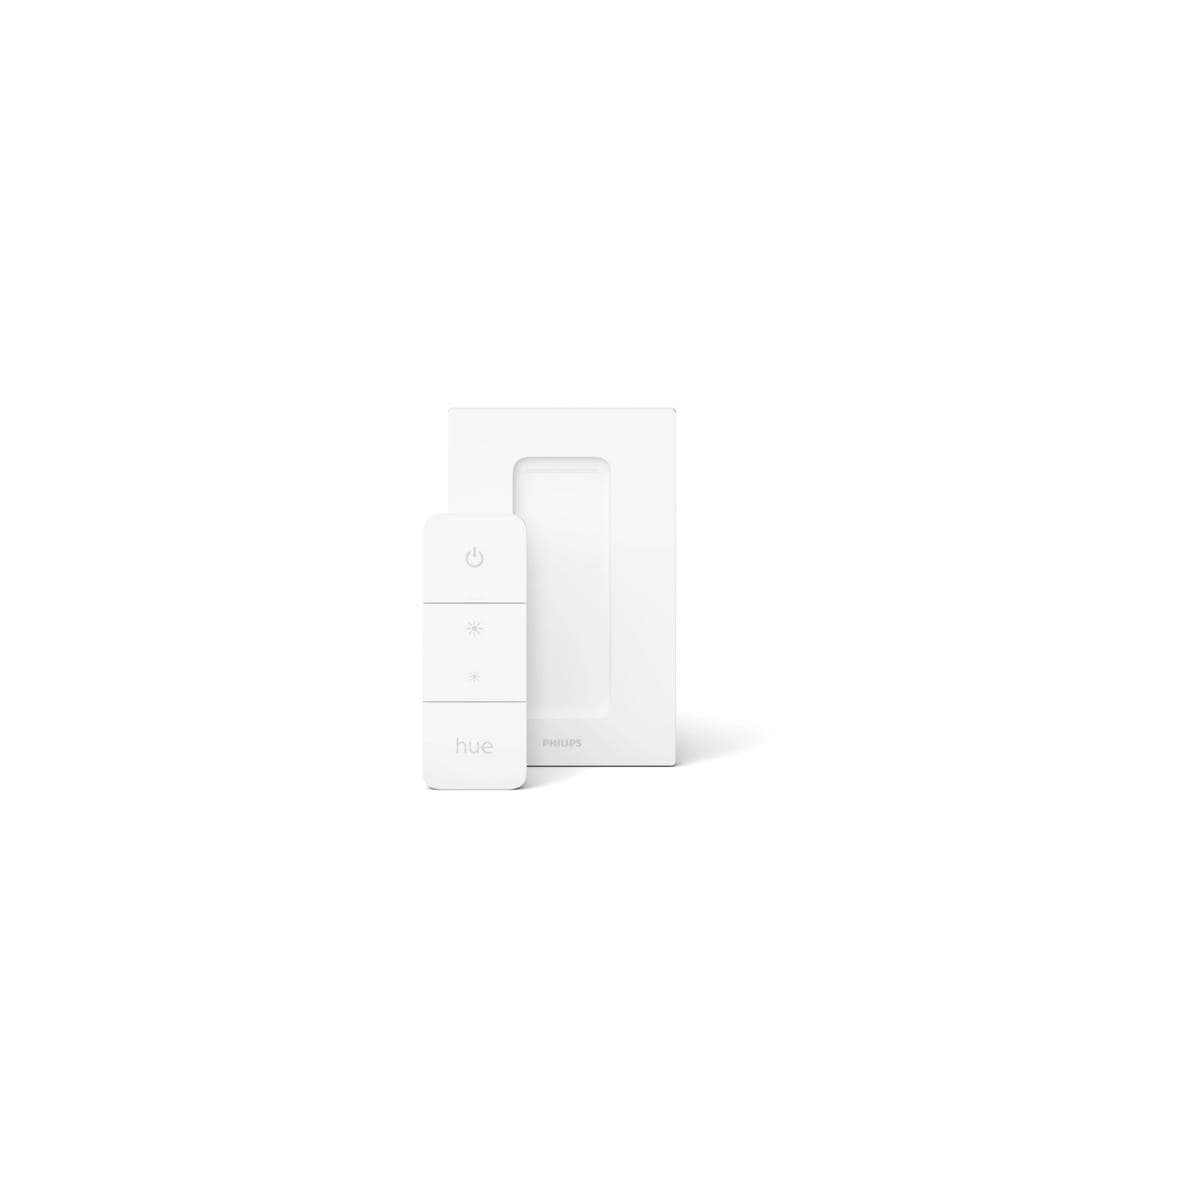 Philips Hue White 25W, (929003054801) Amaze Dimmschalter, Elektroshop LED Pendelleuchte, Wagner Ambiance 4000K, 2900lm, weiß